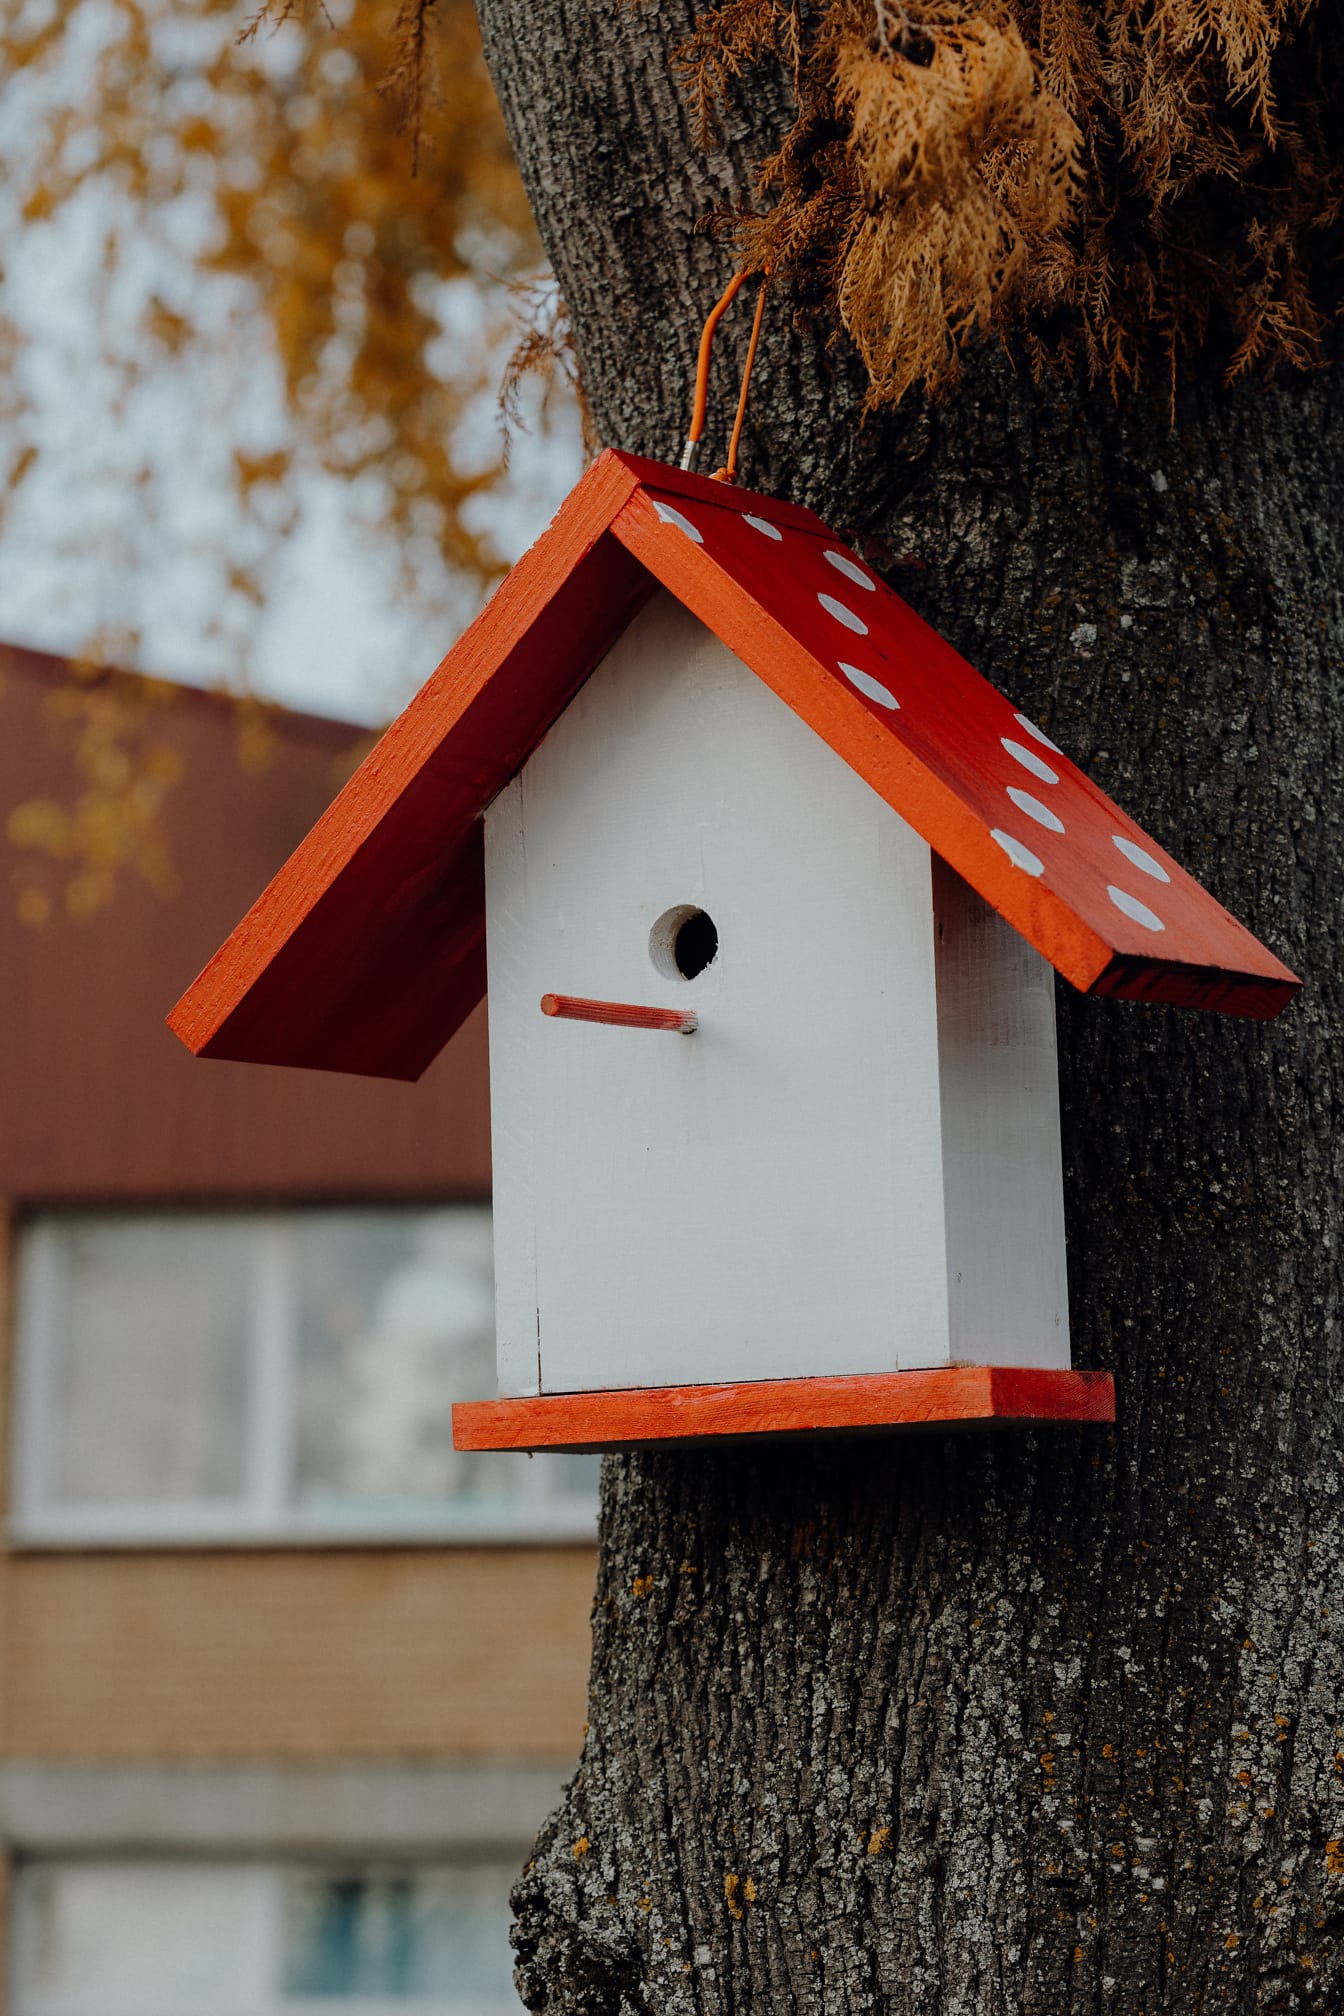 Belle maison d’oiseau faite à la main avec toit rouge accrochée à un arbre